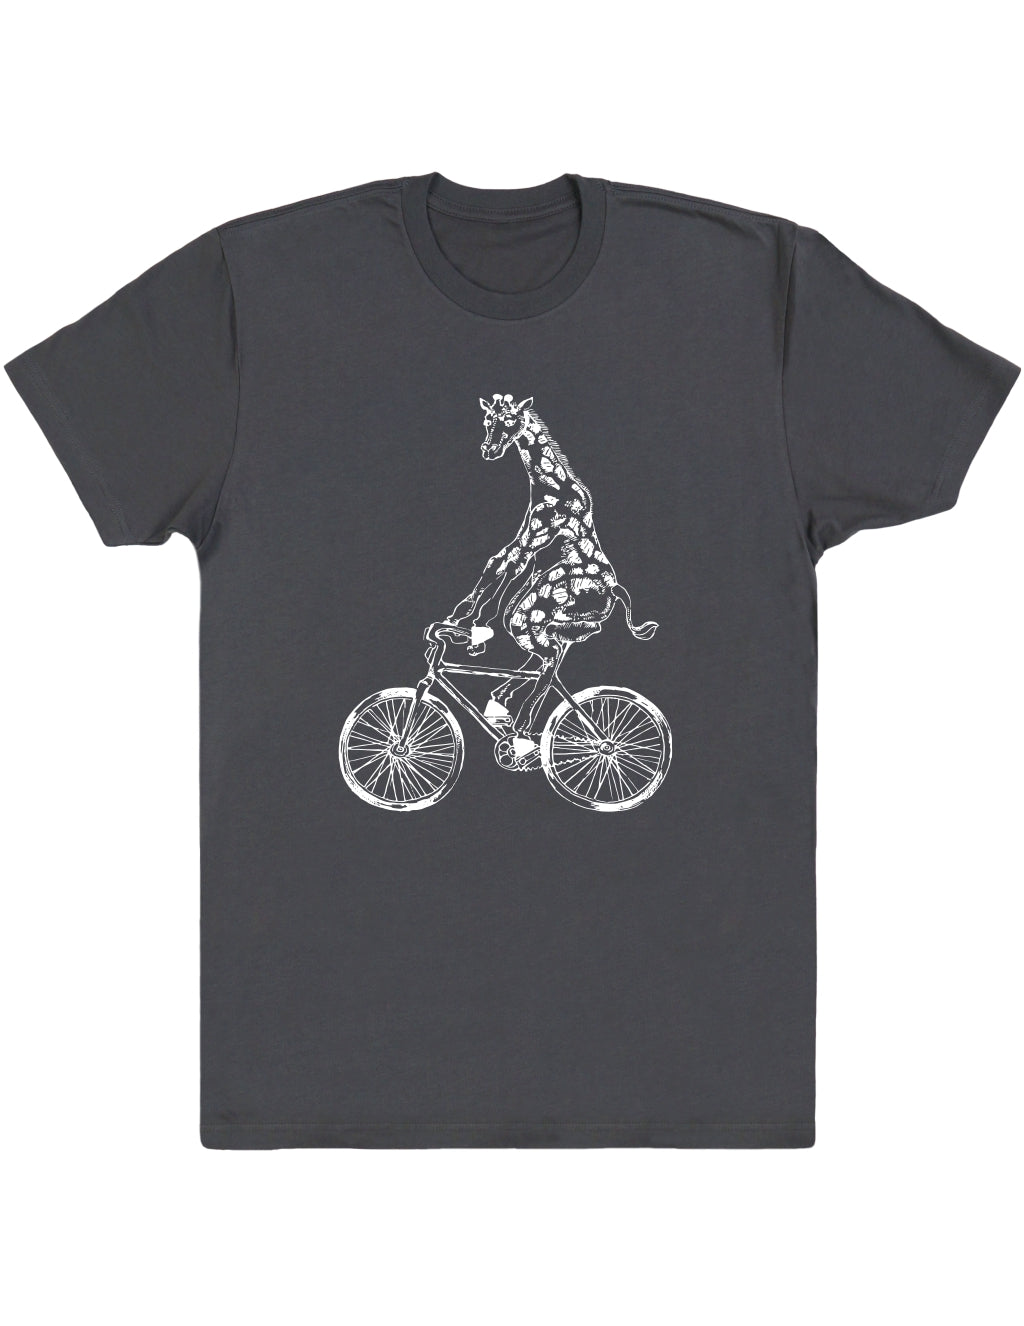 SEEMBO Giraffe Cycling Bicycle Men’s Cotton T-Shirt